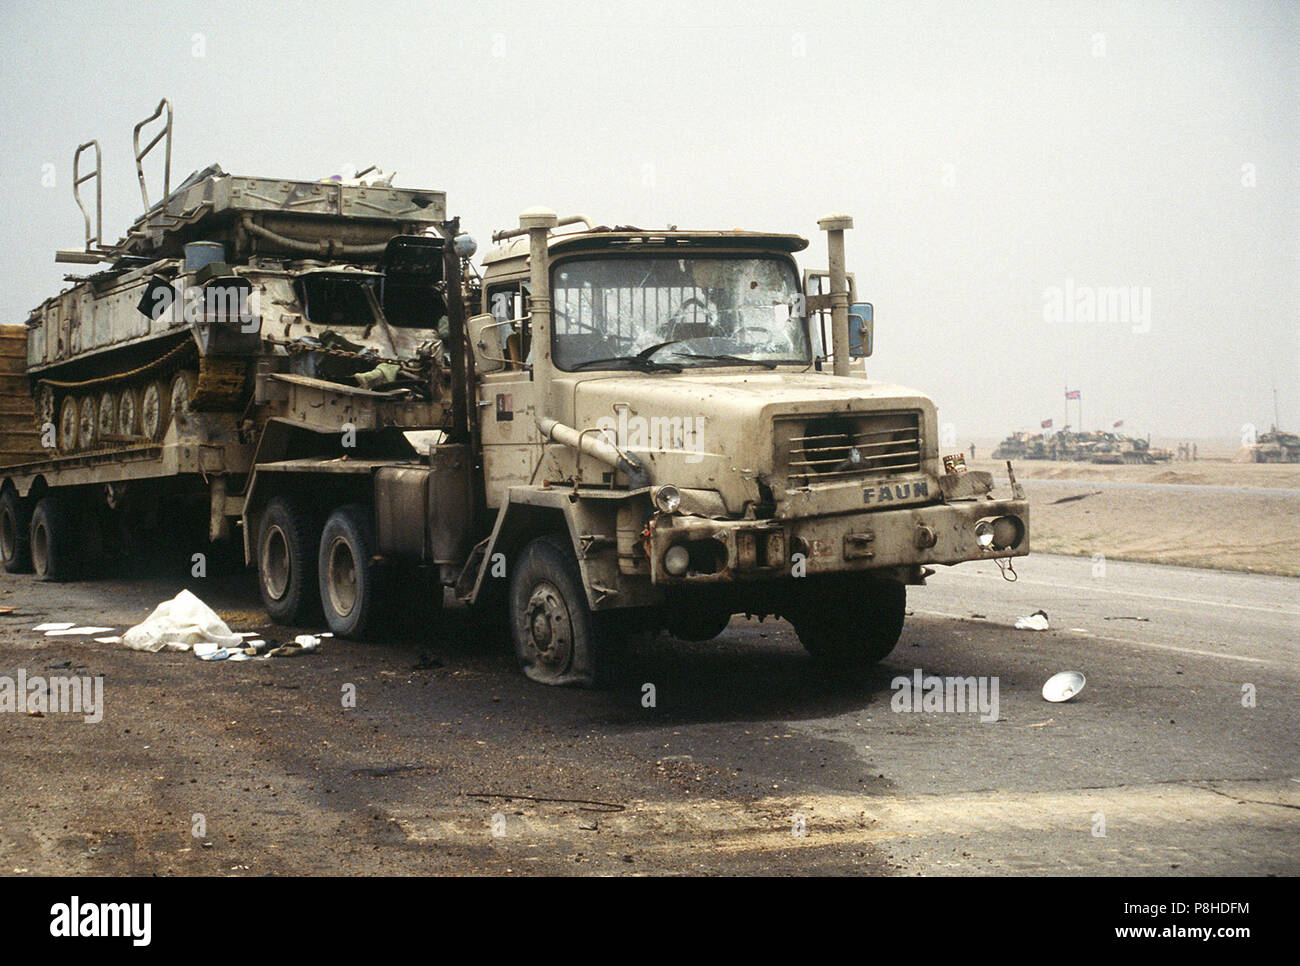 A 2P25 tel un faune sur l'équipement lourd Herkules transporteur. Un Irakien Faun camion tracteur Herkules avec un semi-remorque transportant un réservoir montre les dégâts de combat après le retrait des forces irakiennes le long de la route avec l'Basra-Kuwait de Koweït au cours de l'opération Tempête du désert. Banque D'Images